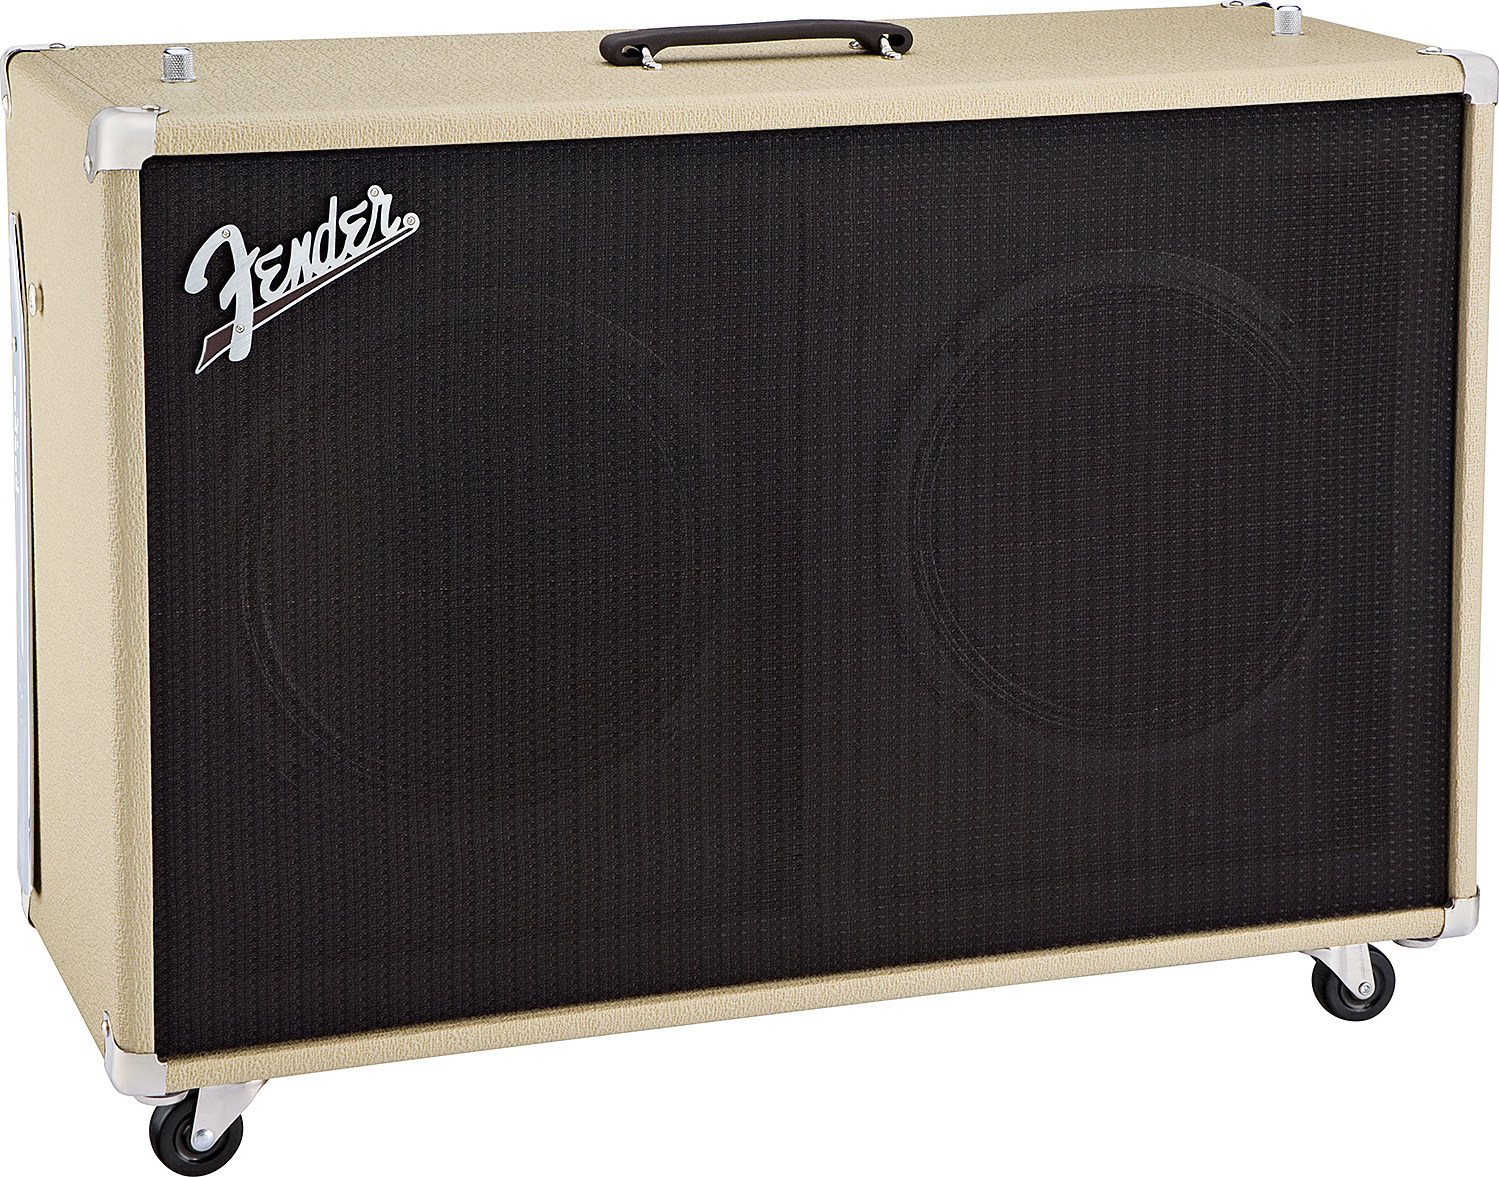 Fender Super Sonic 60 212 Enclosure 2x12 120w Blonde - Baffle Ampli Guitare Électrique - Main picture